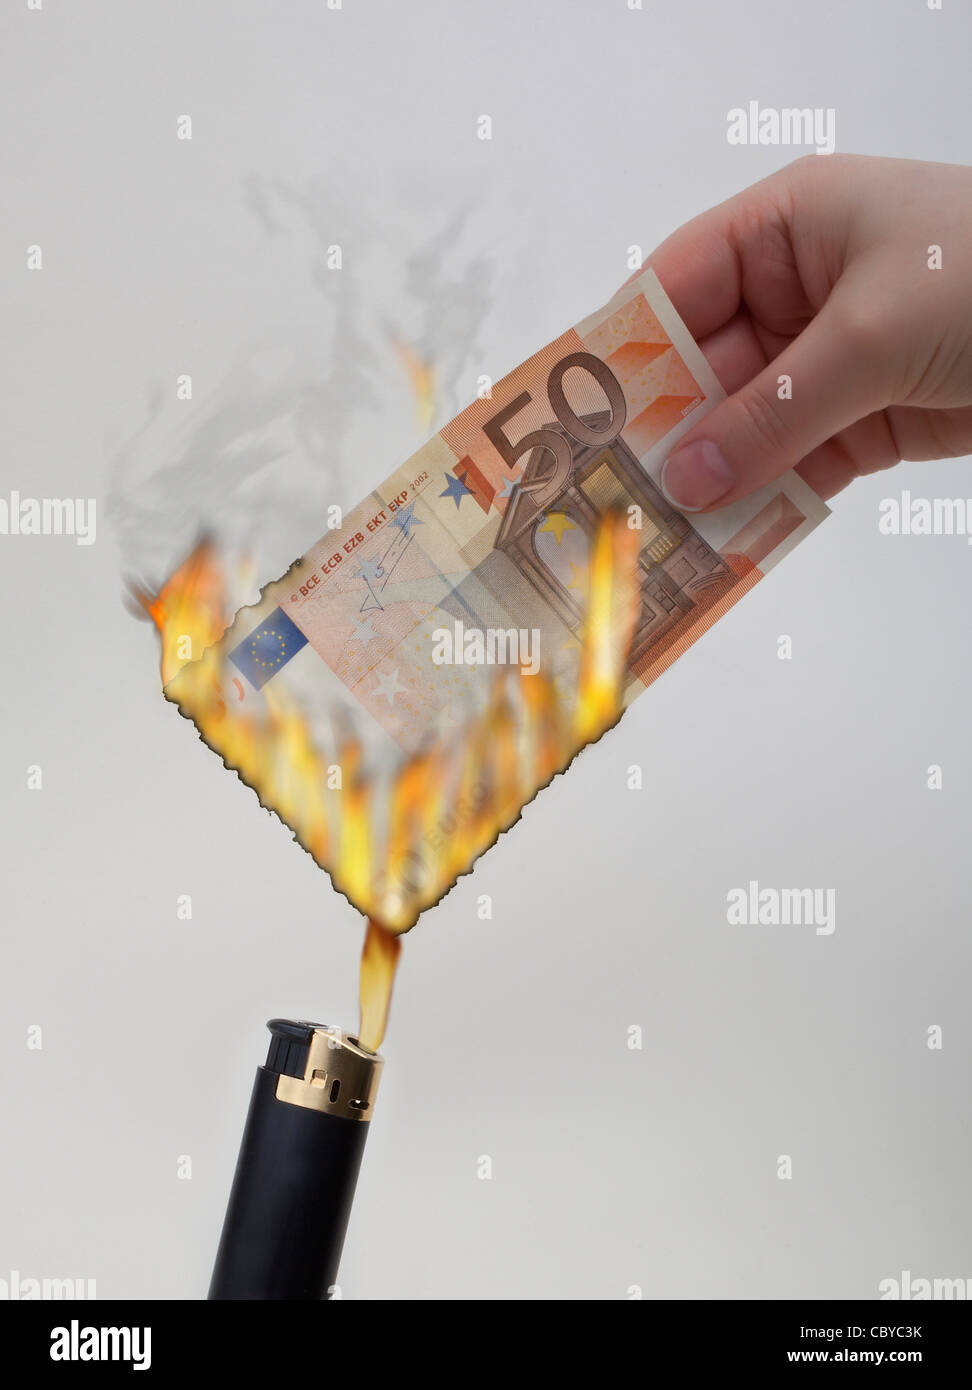 Euros burning Stock Photo